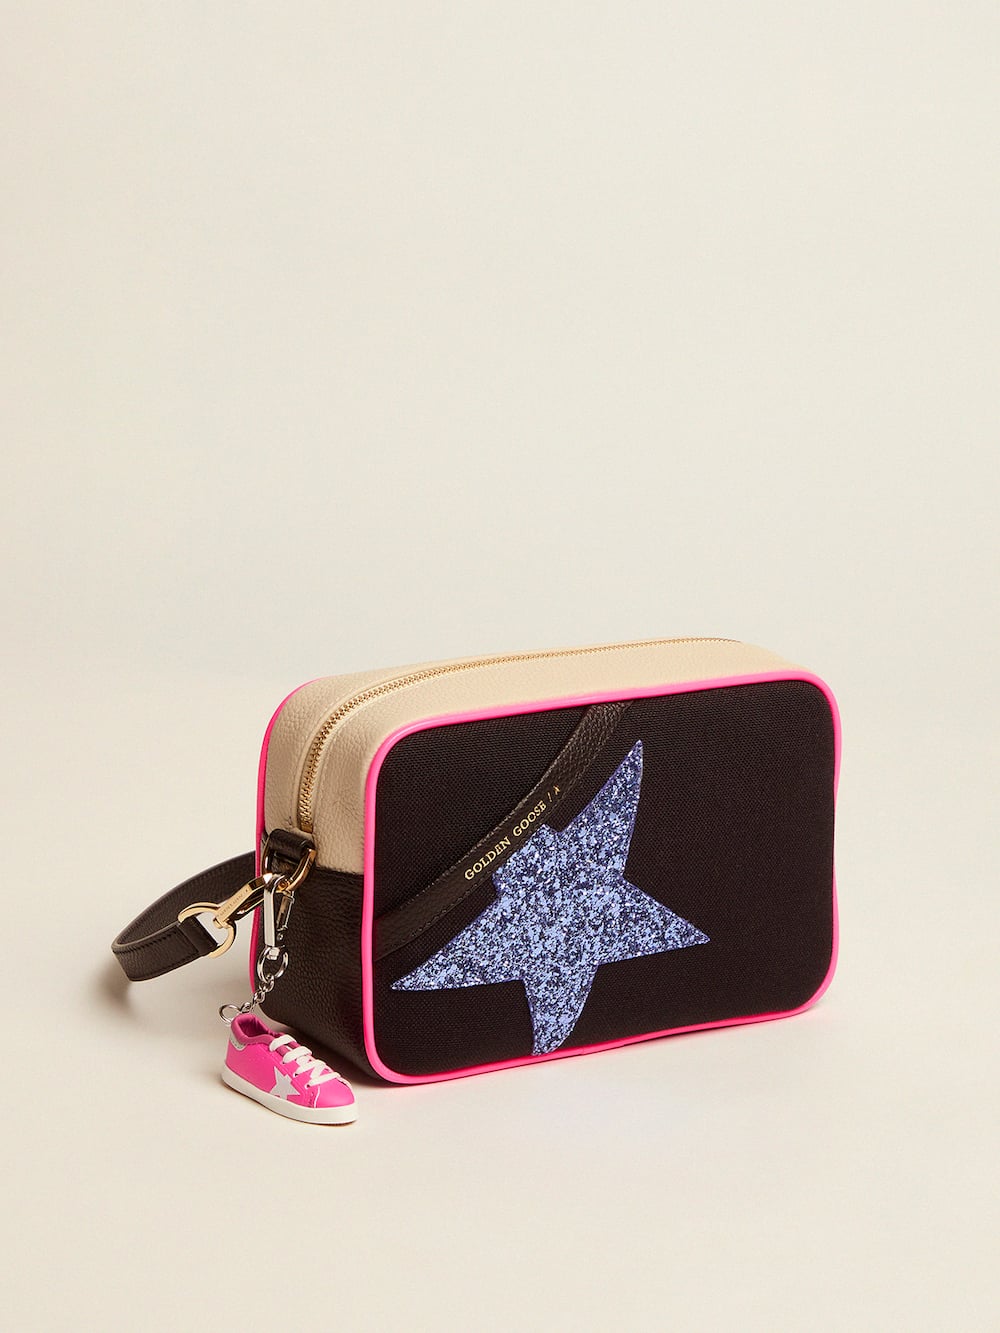 Golden Goose - Bolso Star Bag de lona con aplicaciones blanco sucio de piel martillada y estrella de purpurina morada in 